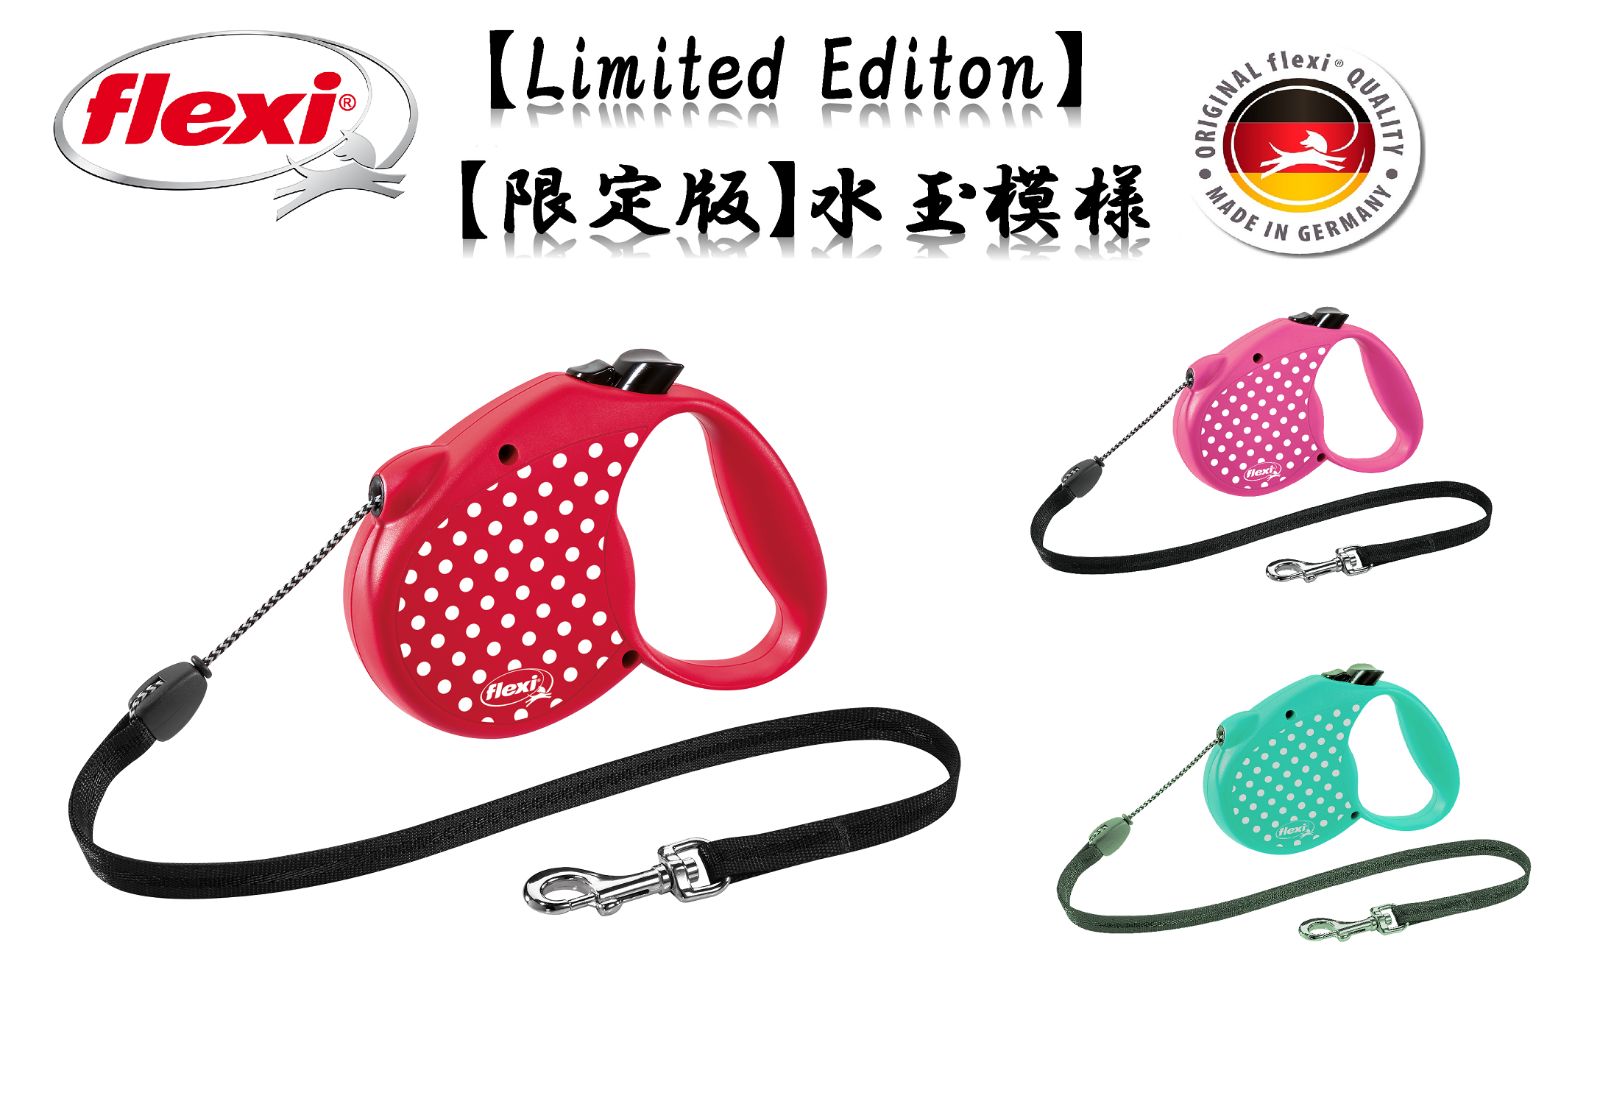 Flexi フレキシ リード 【限定版】 【Limited Edition】 水玉模様 コード 5m Sサイズ Pink(ピンク)